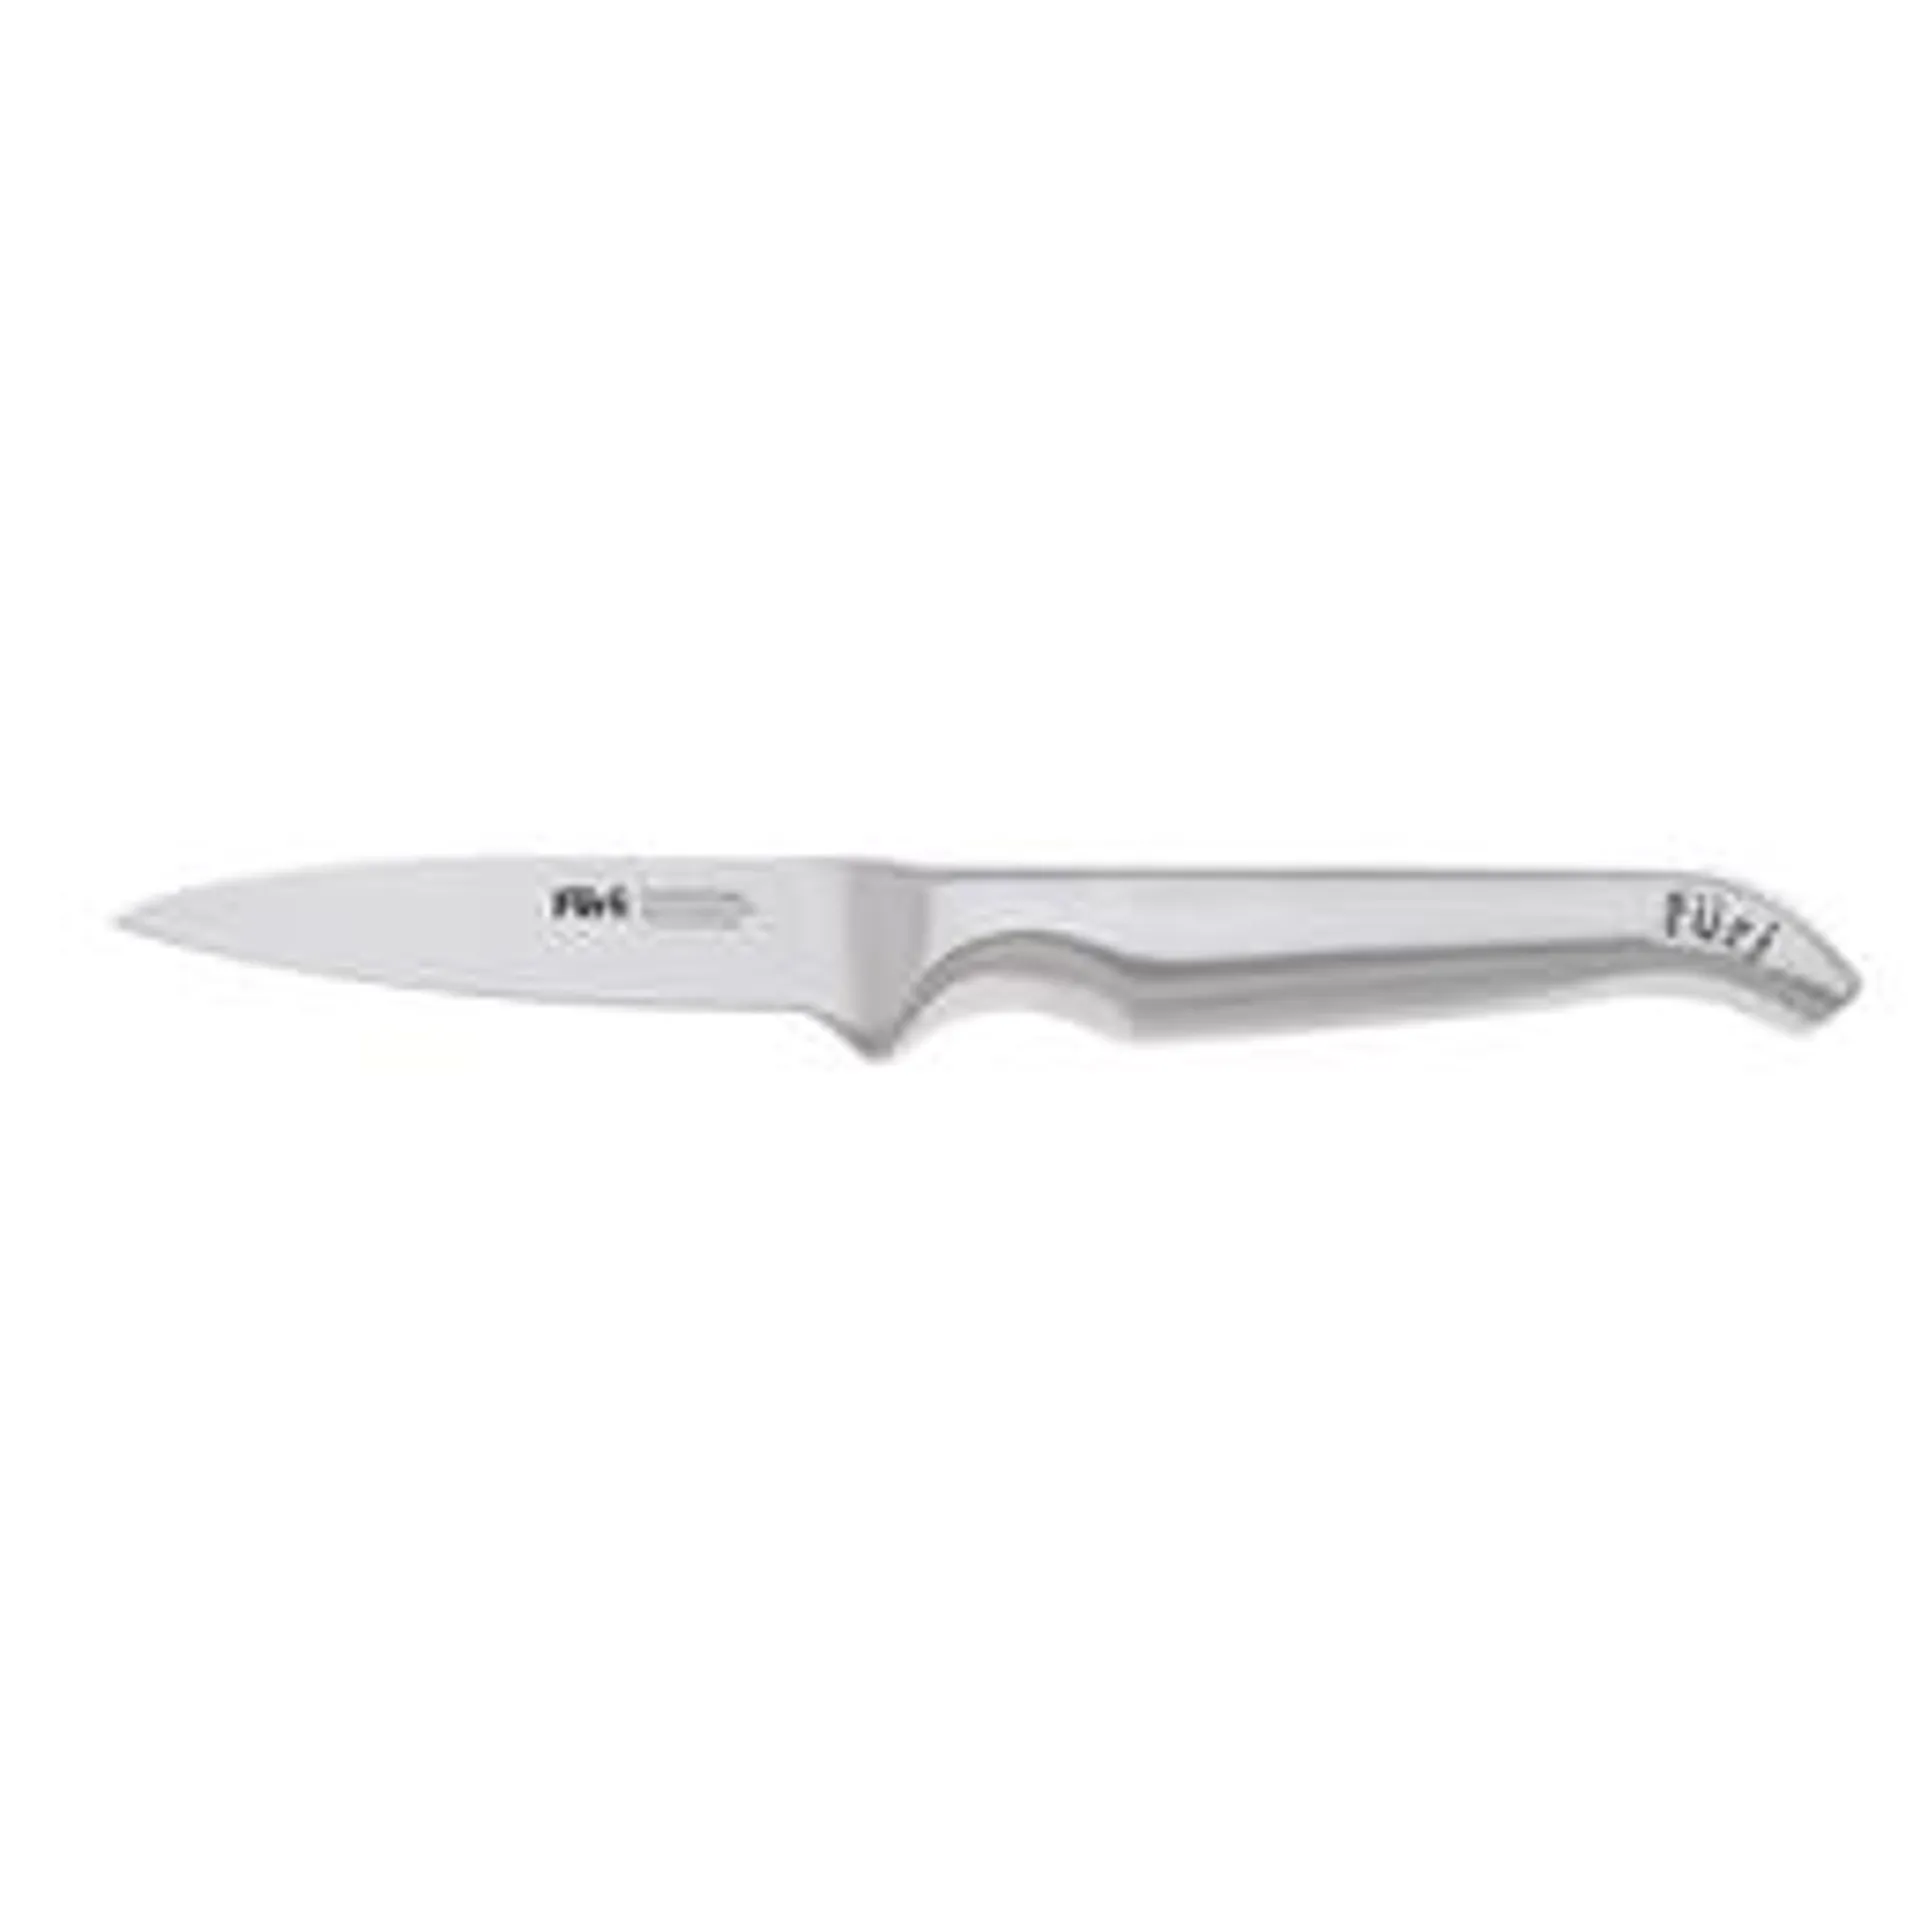 Furi Pro Paring Knife, 9cm